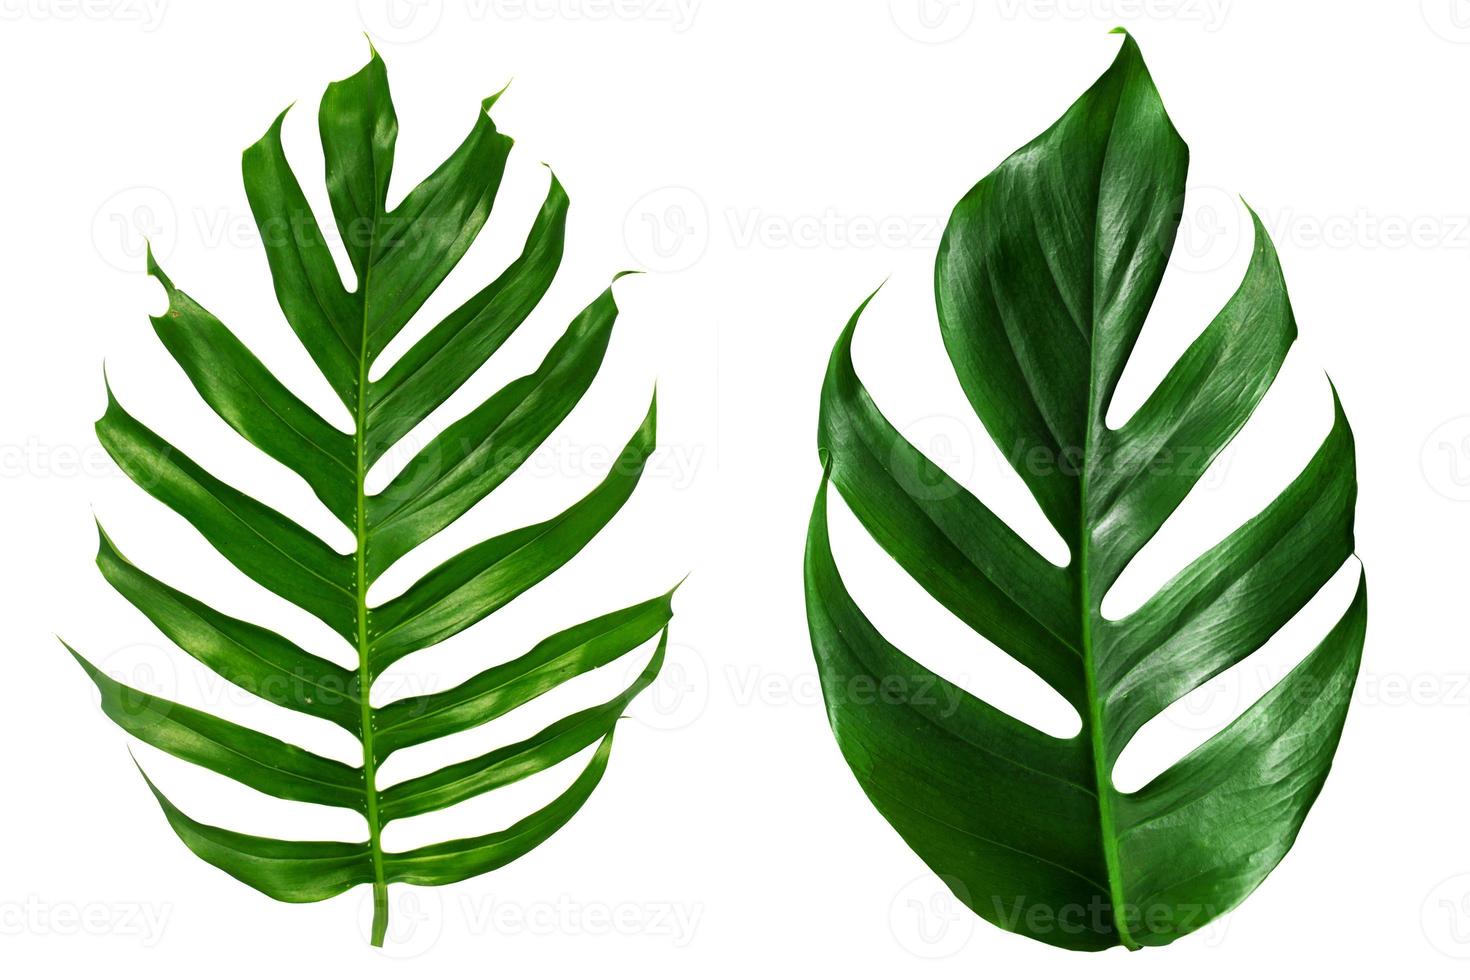 vista superior plana laicos de hojas de palmera verde foto